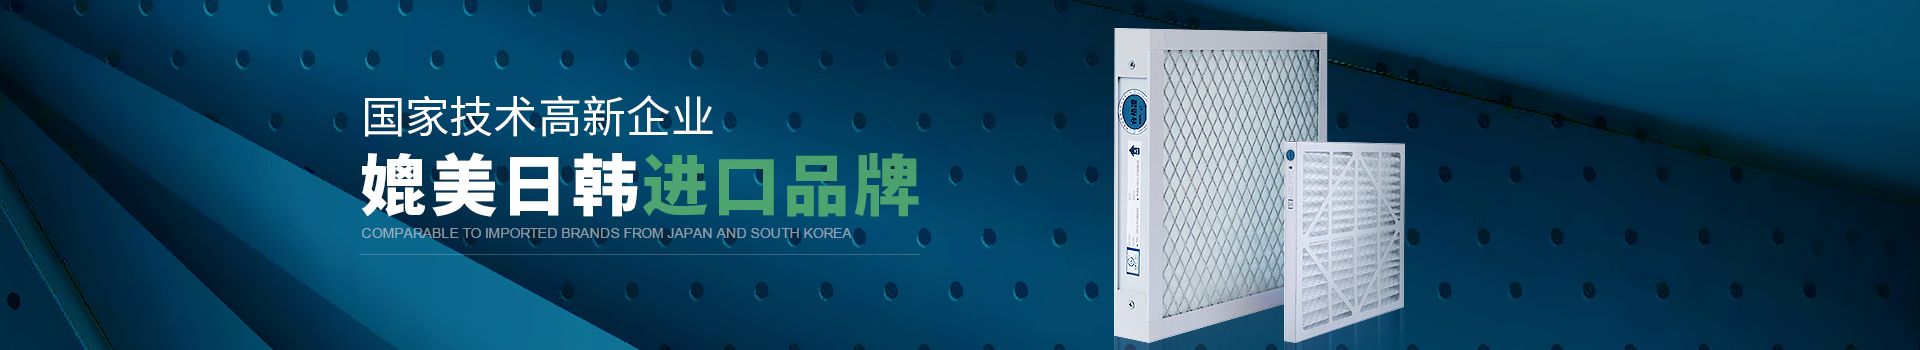 J9九游会真人游戏第一品牌净化国家技术高新企业，媲美日韩进口品牌